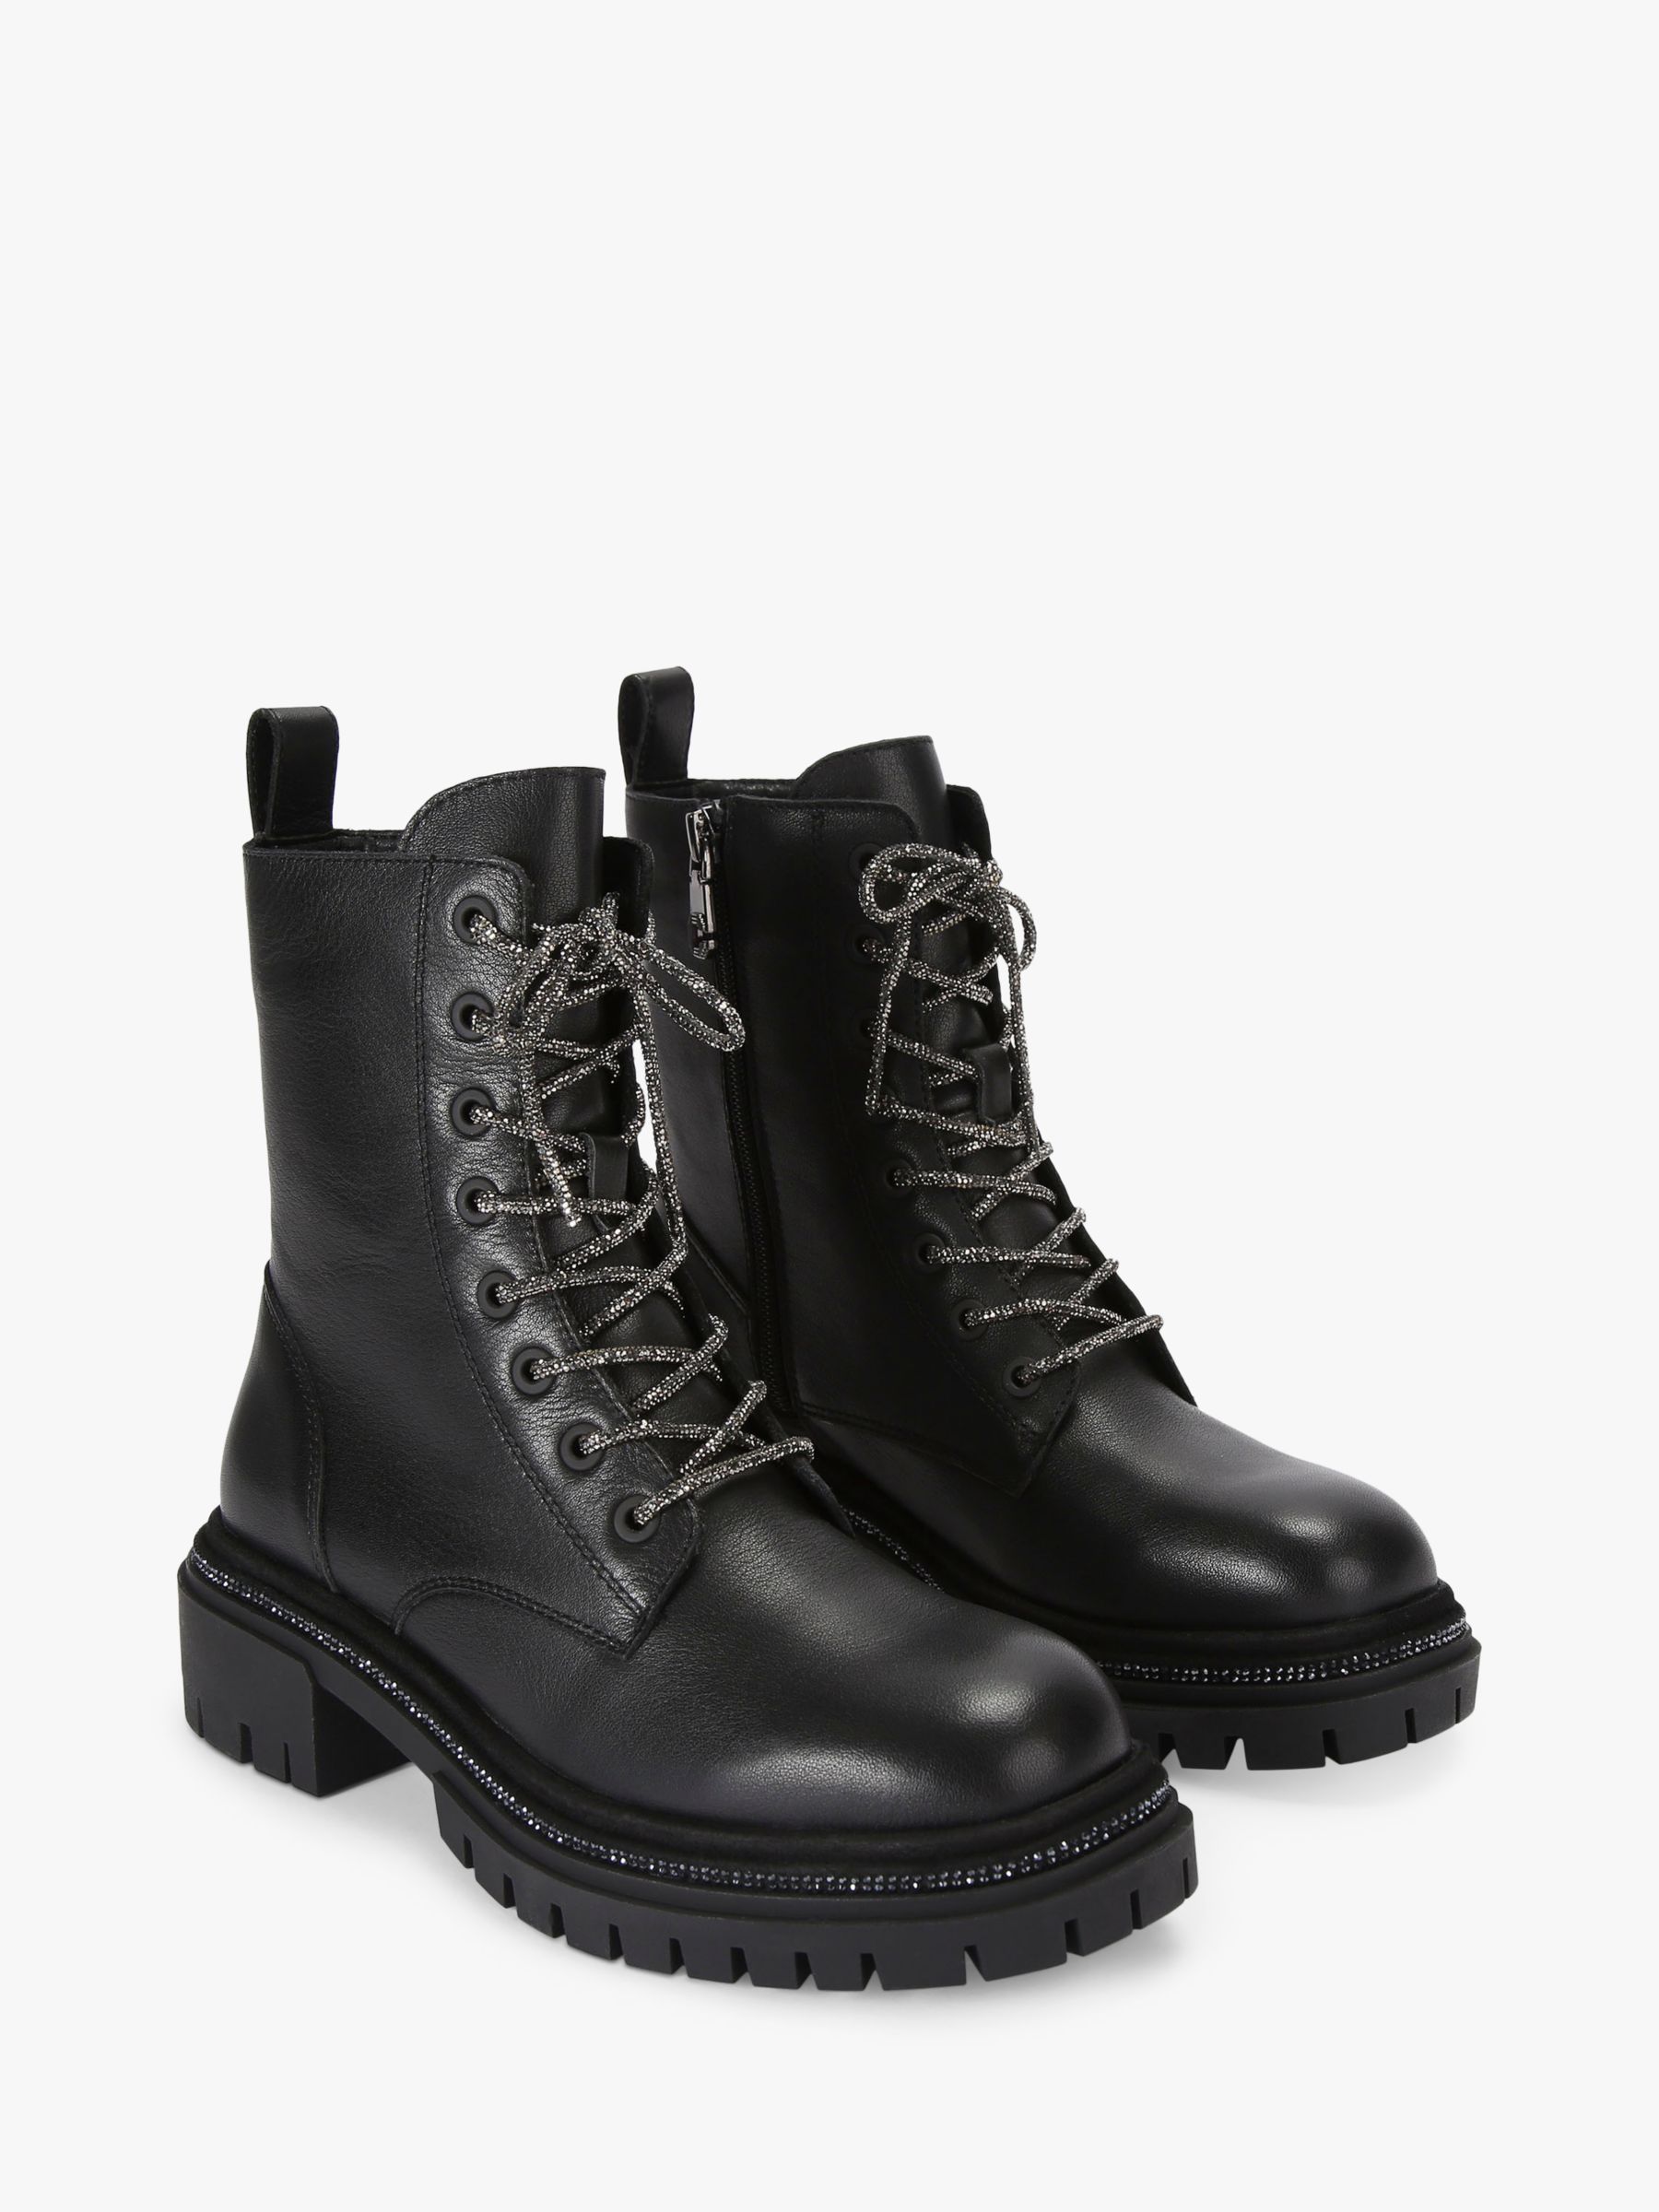 Carvela Dazzle Leather Biker Boots, Black, 3